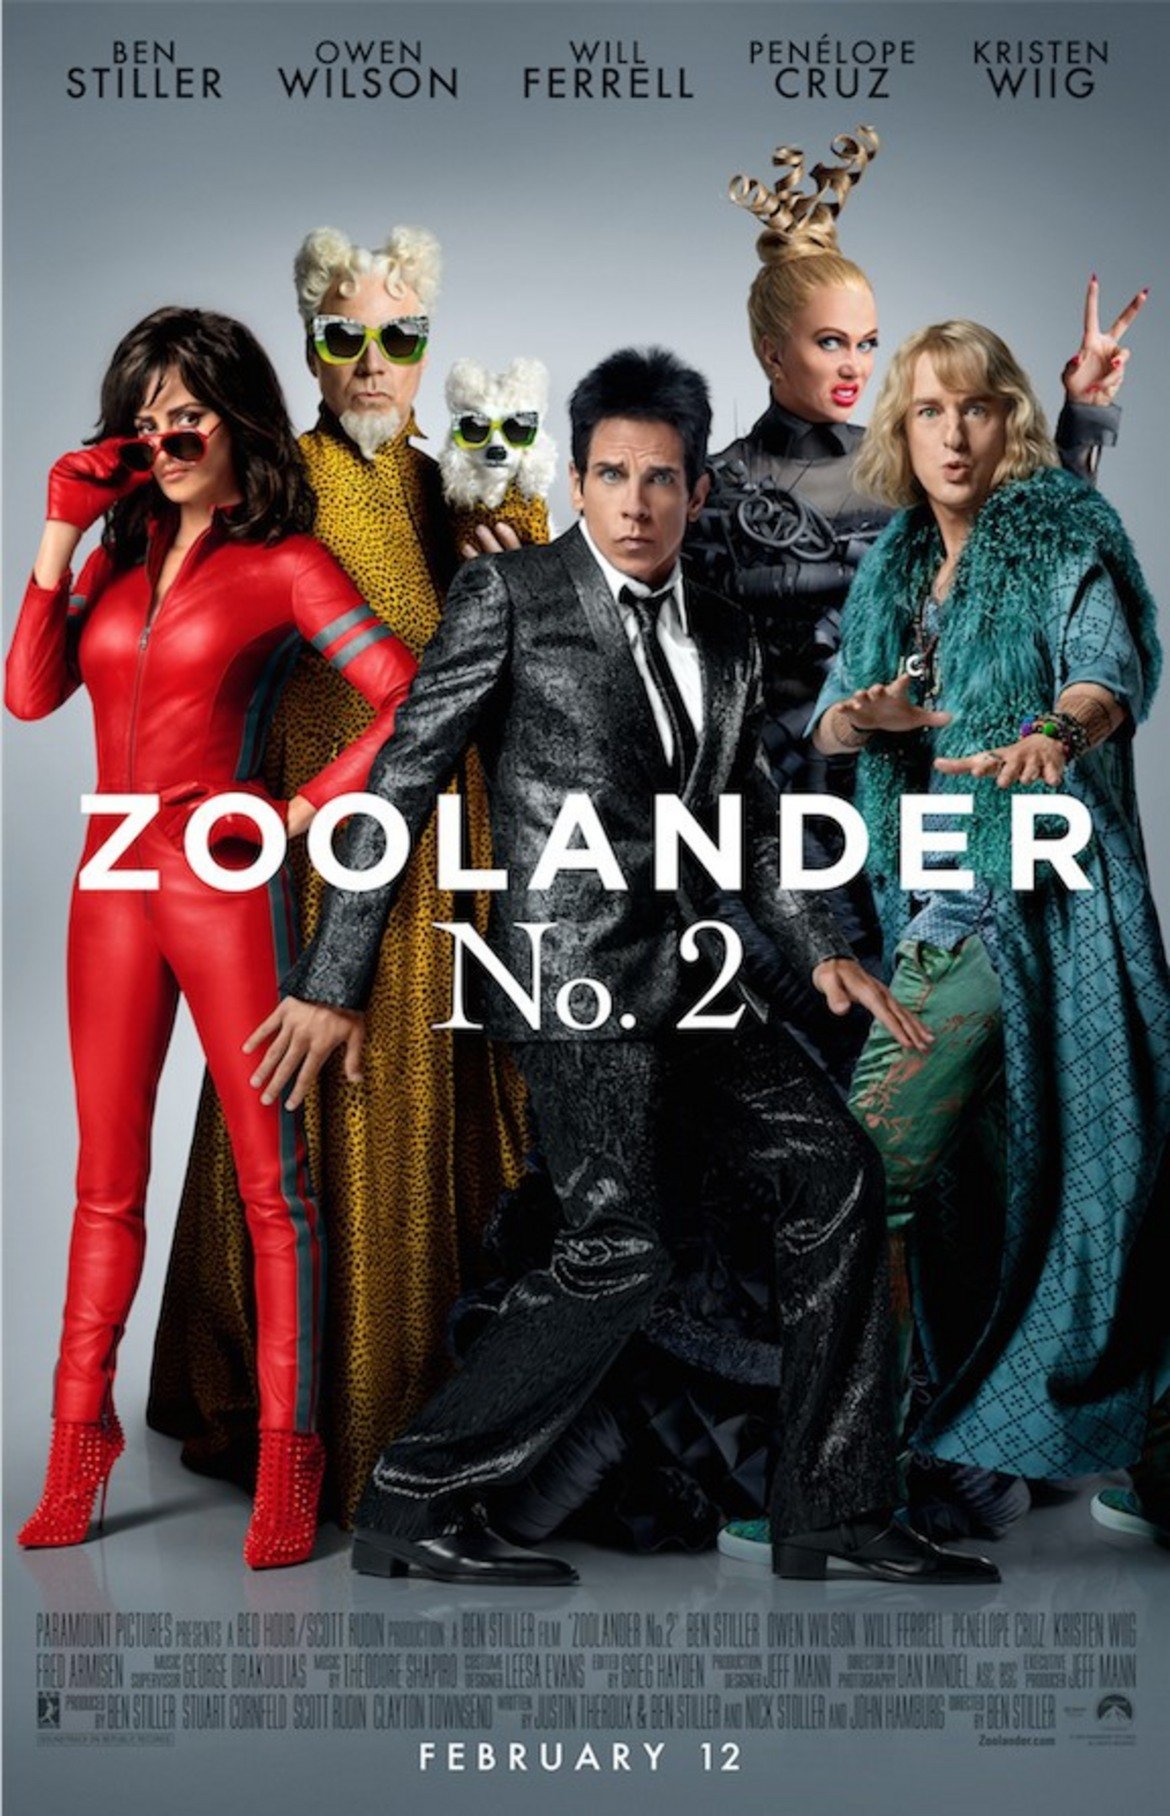 "Зулендър 2" (Zoolander 2, 2016 г.)
Дерек (Бен Стилър) и Хензел (Оуен Уилсън) са примамени да се занимават с мода отново след като от години не са го правили. В Рим обаче двамата се оказват цел на зловеща конспирация. Разбира се, при комбинацията Стилър-Уилсън ви е ясно, че става въпрос за комедия. Като добавим към това имена като Пенелопе Круз, Уил Феръл, Мила Йовович и др., филмът достига равнището "ставащ за гледане",  макар да не получи висока оценка от критиката.